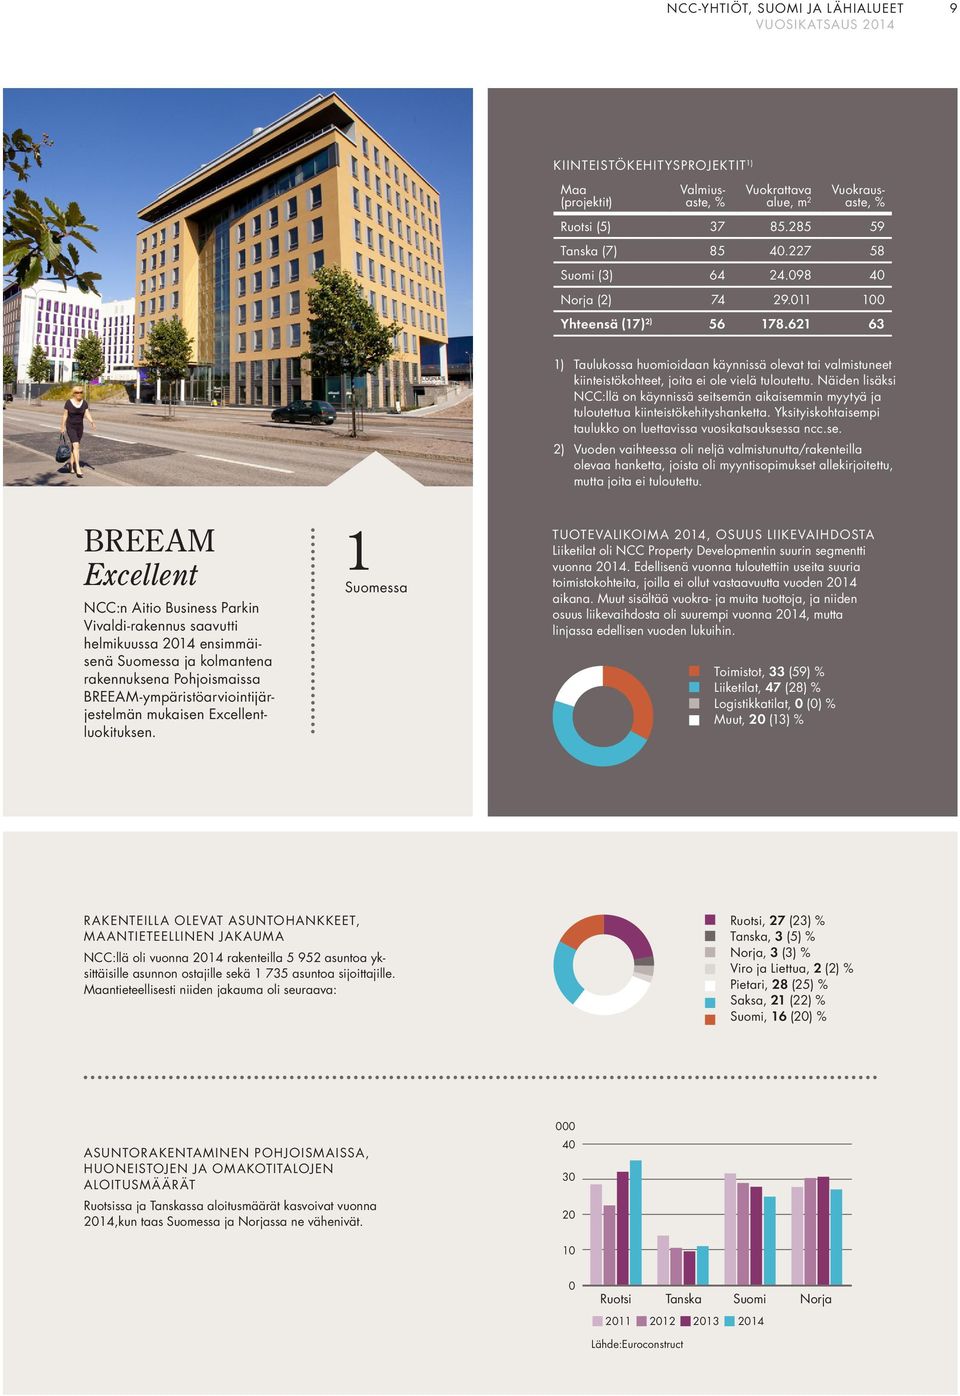 621 63 BREEAM Excellent :n Aitio Business Parkin Vivaldi-rakennus saavutti helmikuussa 2014 ensimmäisenä Suomessa ja kolmantena rakennuksena Pohjoismaissa BREEAM-ympäristöarviointijärjestelmän